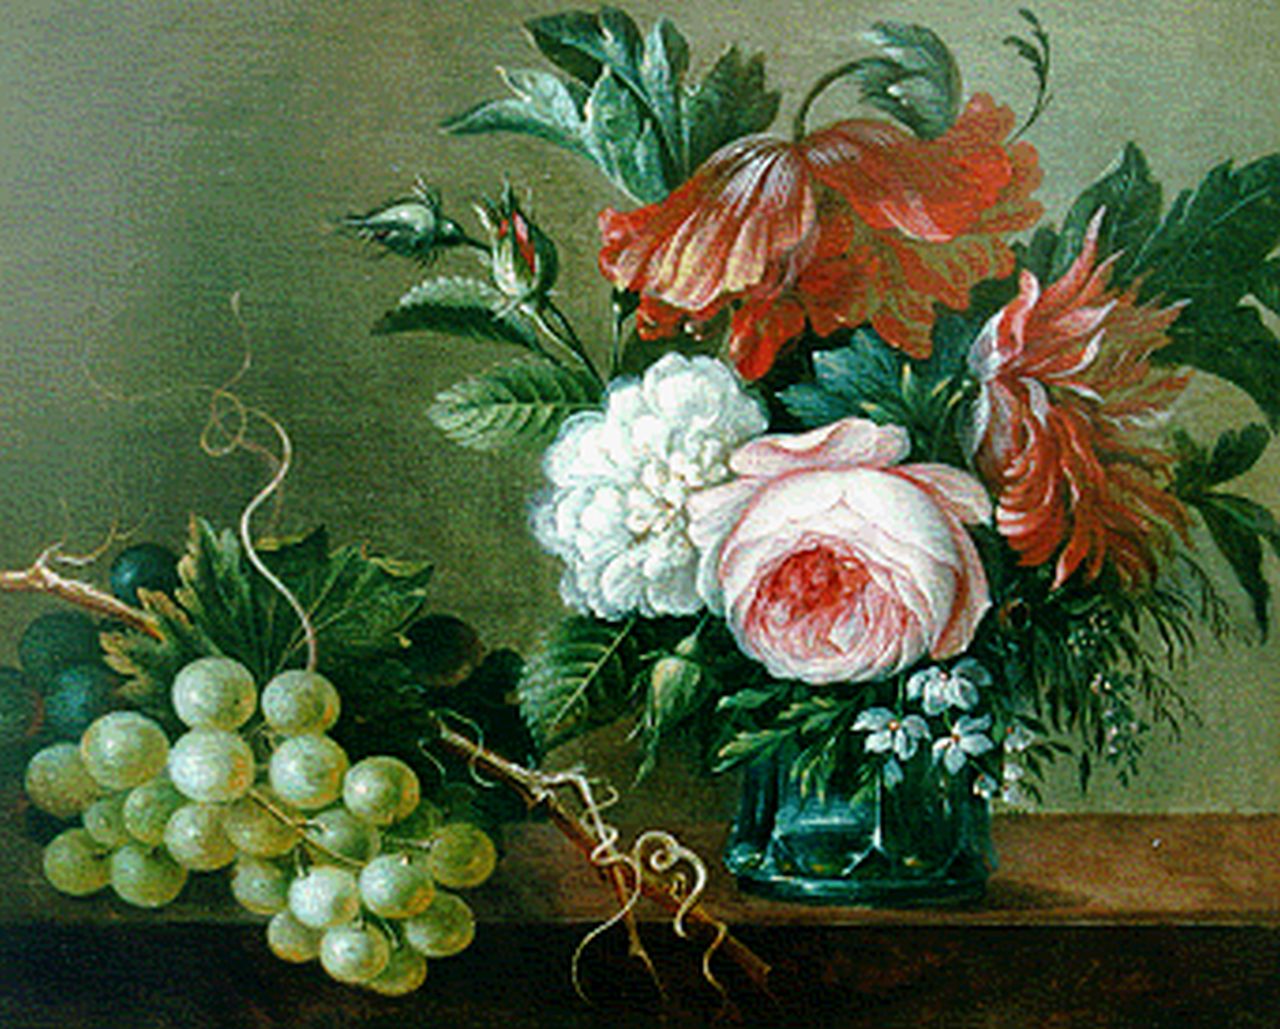 Adrianus Apol | Stilleven van bloemen en druiven, olieverf op paneel, 22,9 x 28,3 cm, gesigneerd r.o. en gedateerd 1845